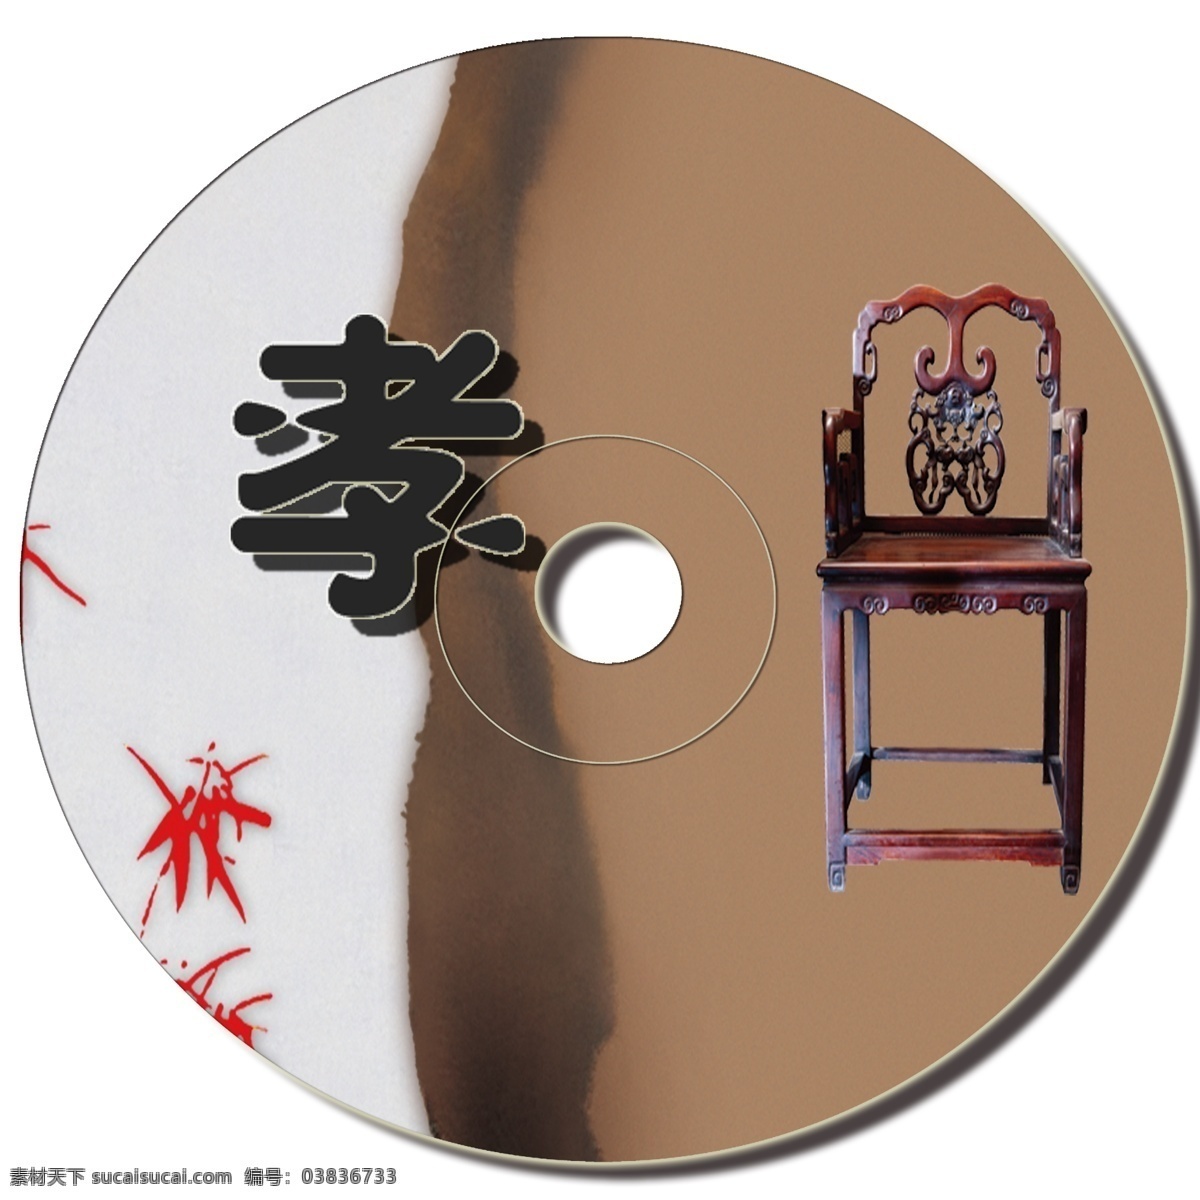 孝 为主 题 cd 包装 作品 cd包装设计 psd格式 中国文化 行孝道 原创设计 其他原创设计